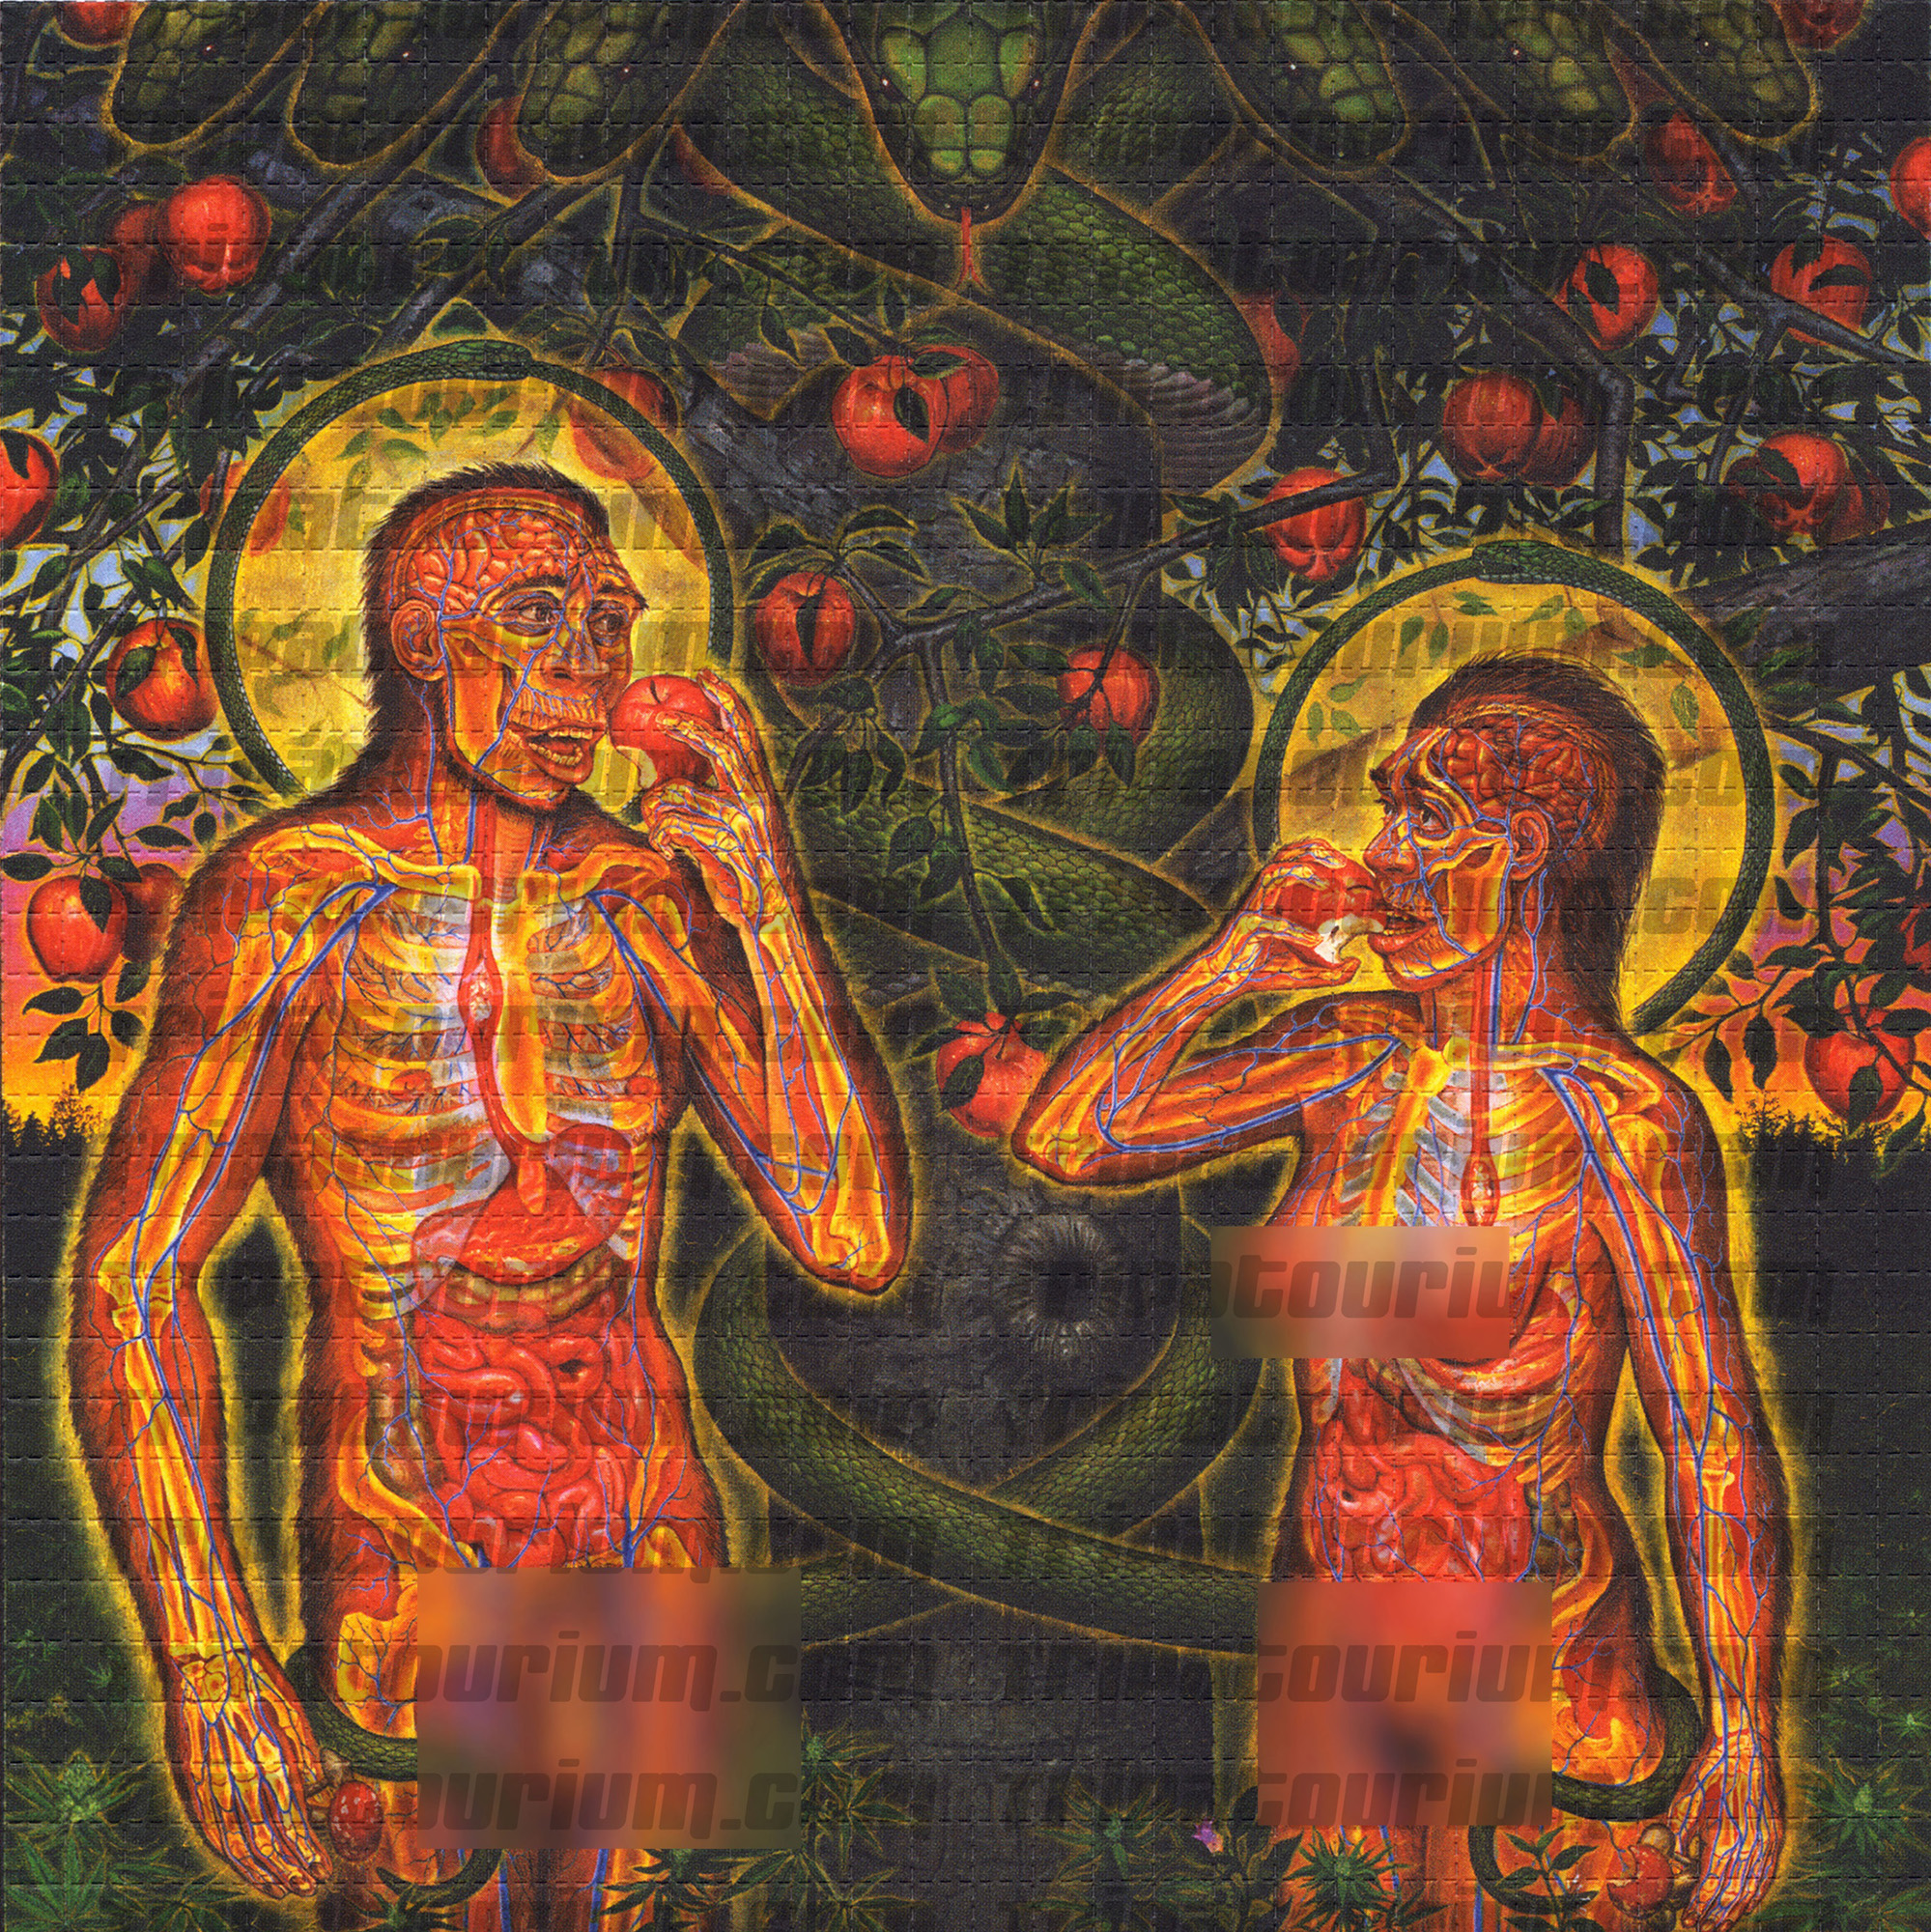 A scan of the LSD Blotter Art Print Adam & Eve by Alex Grey